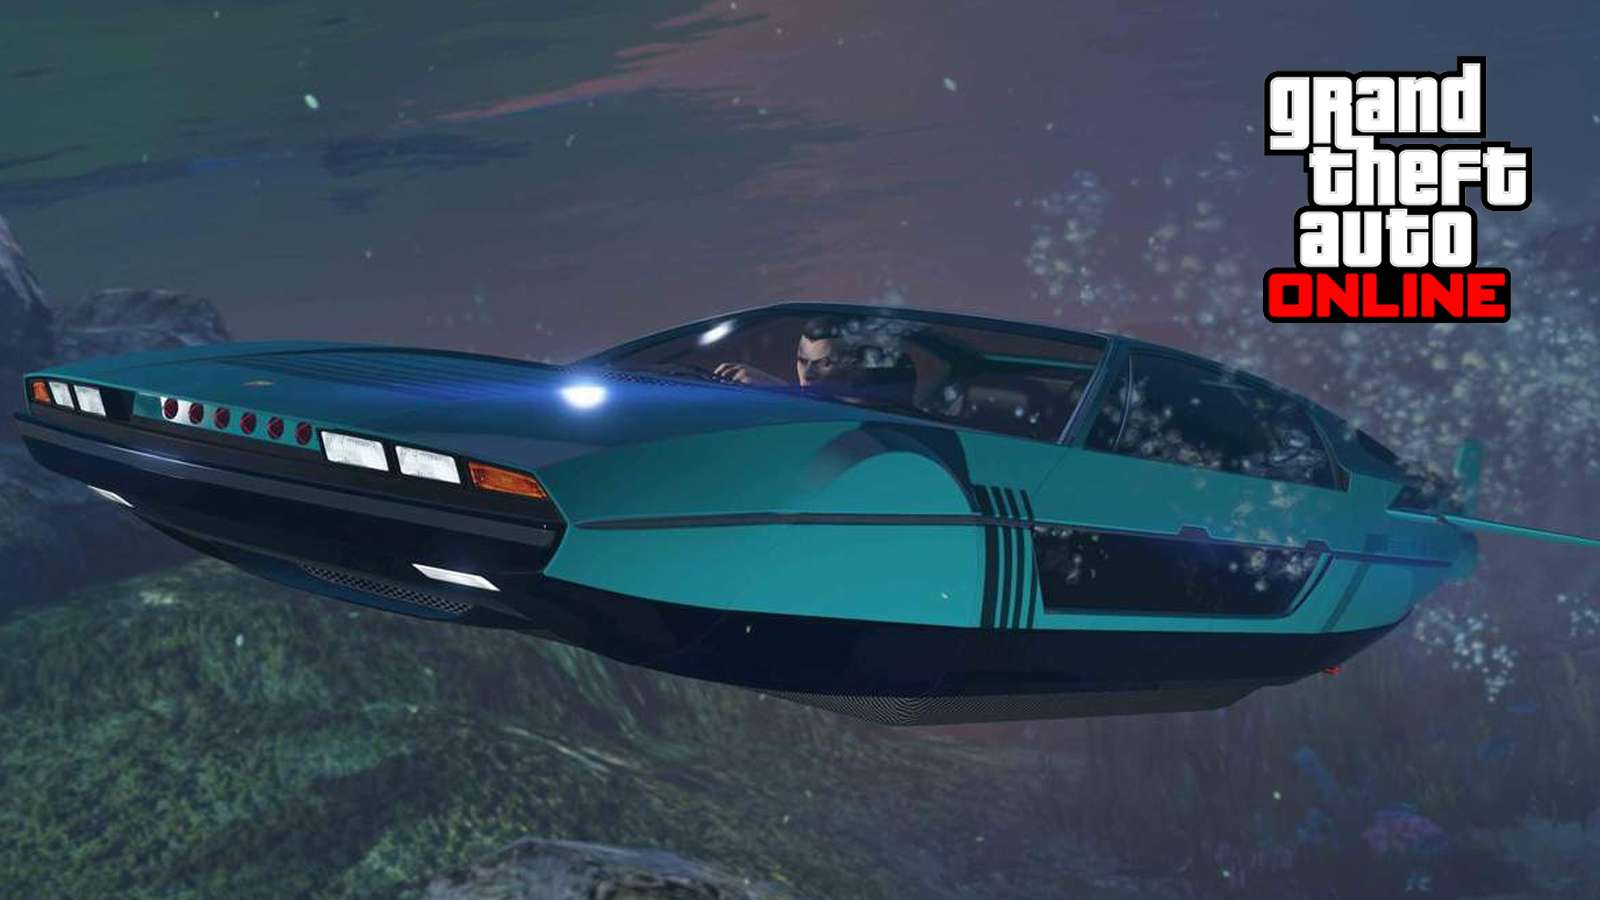 Toreador submarino GTA Online